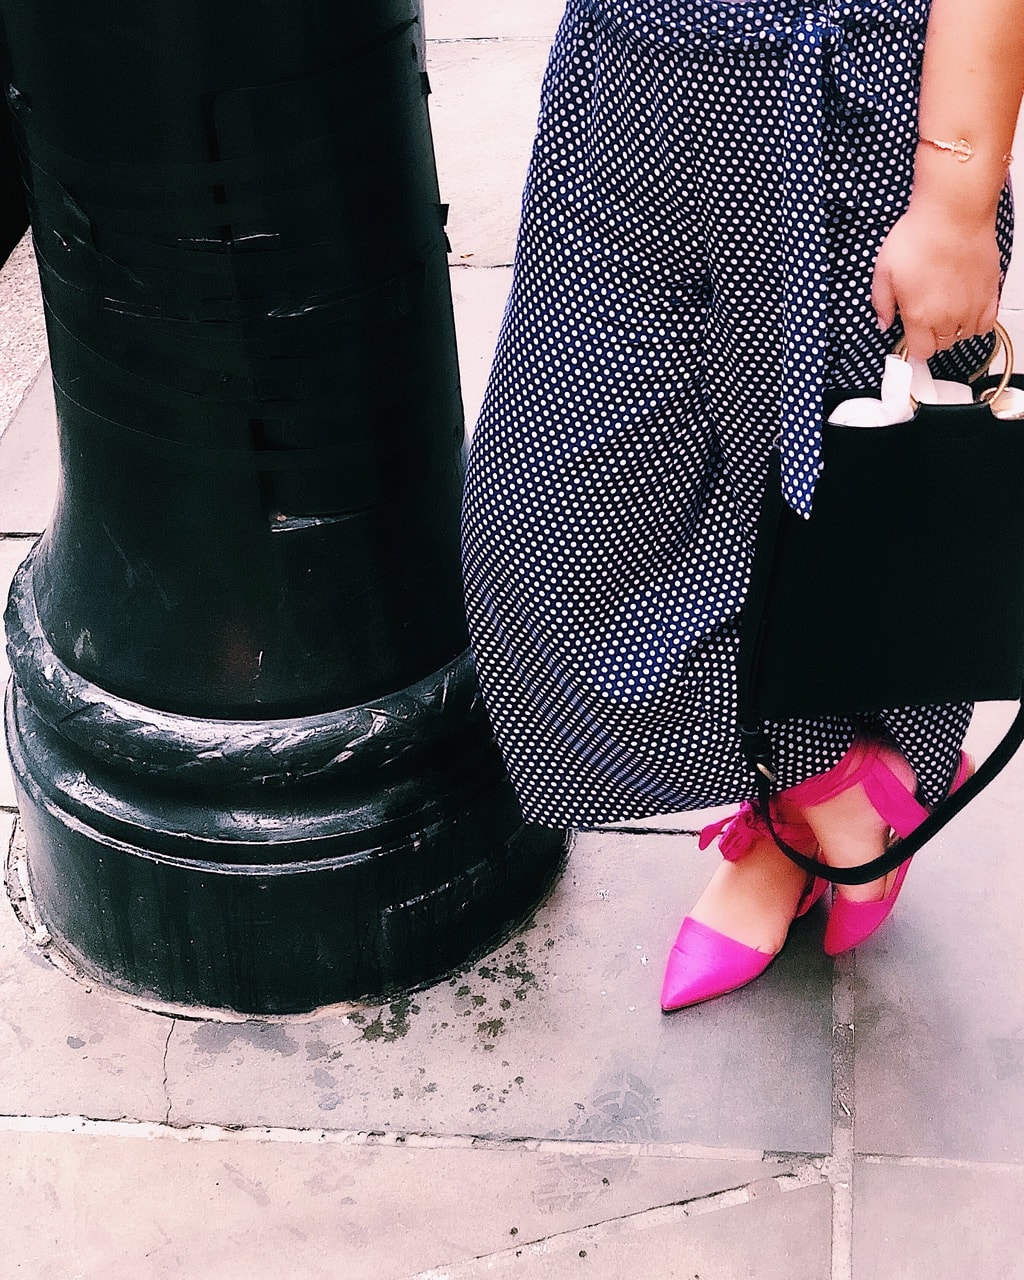 Pink shoes and polka dot pants